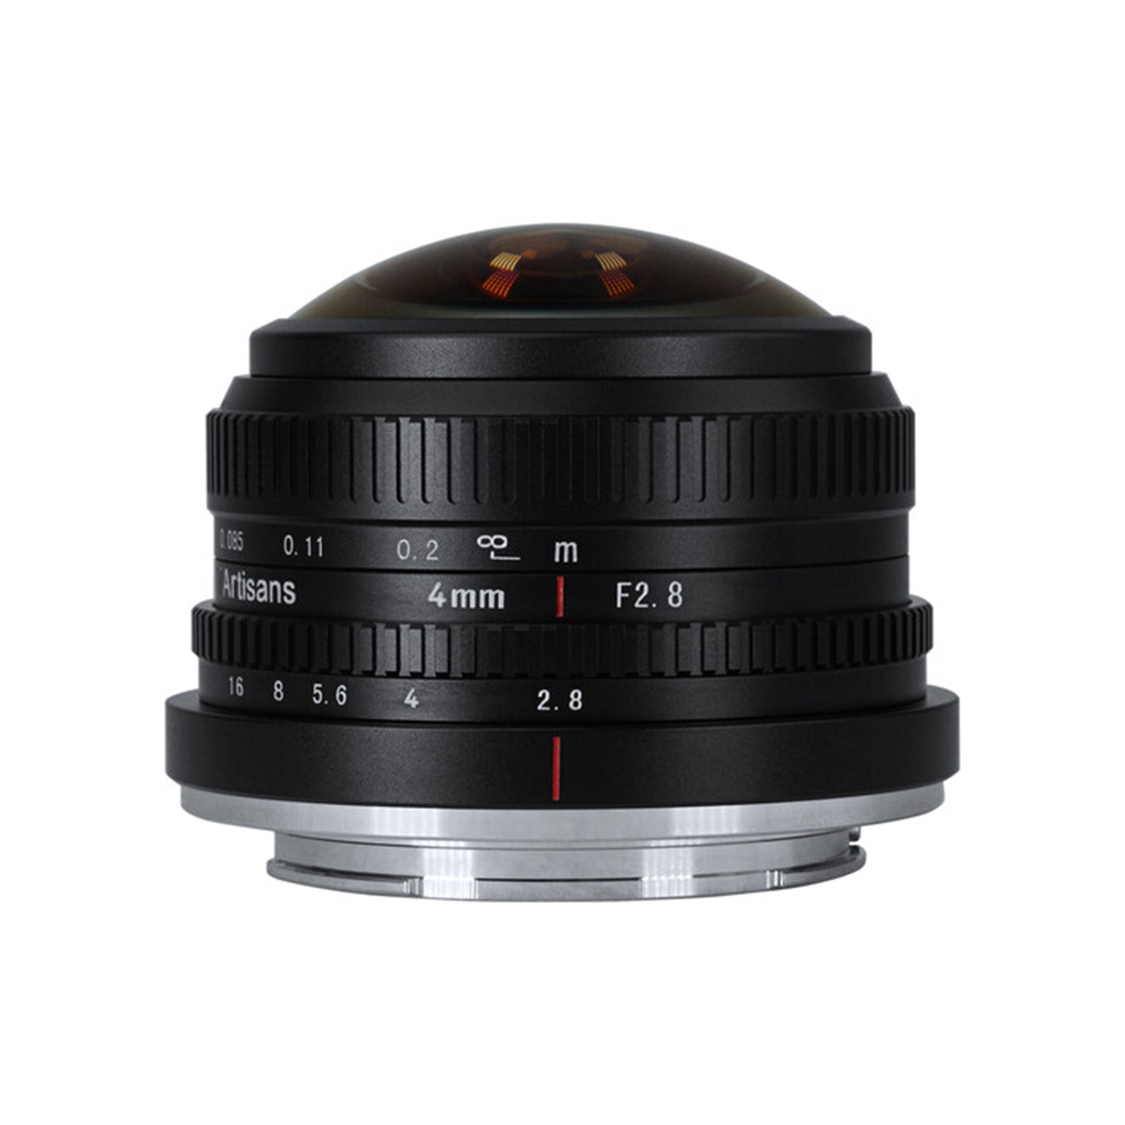 7Artisans 4mm f2.8 Fisheye Lens for Canon EF-M Mount